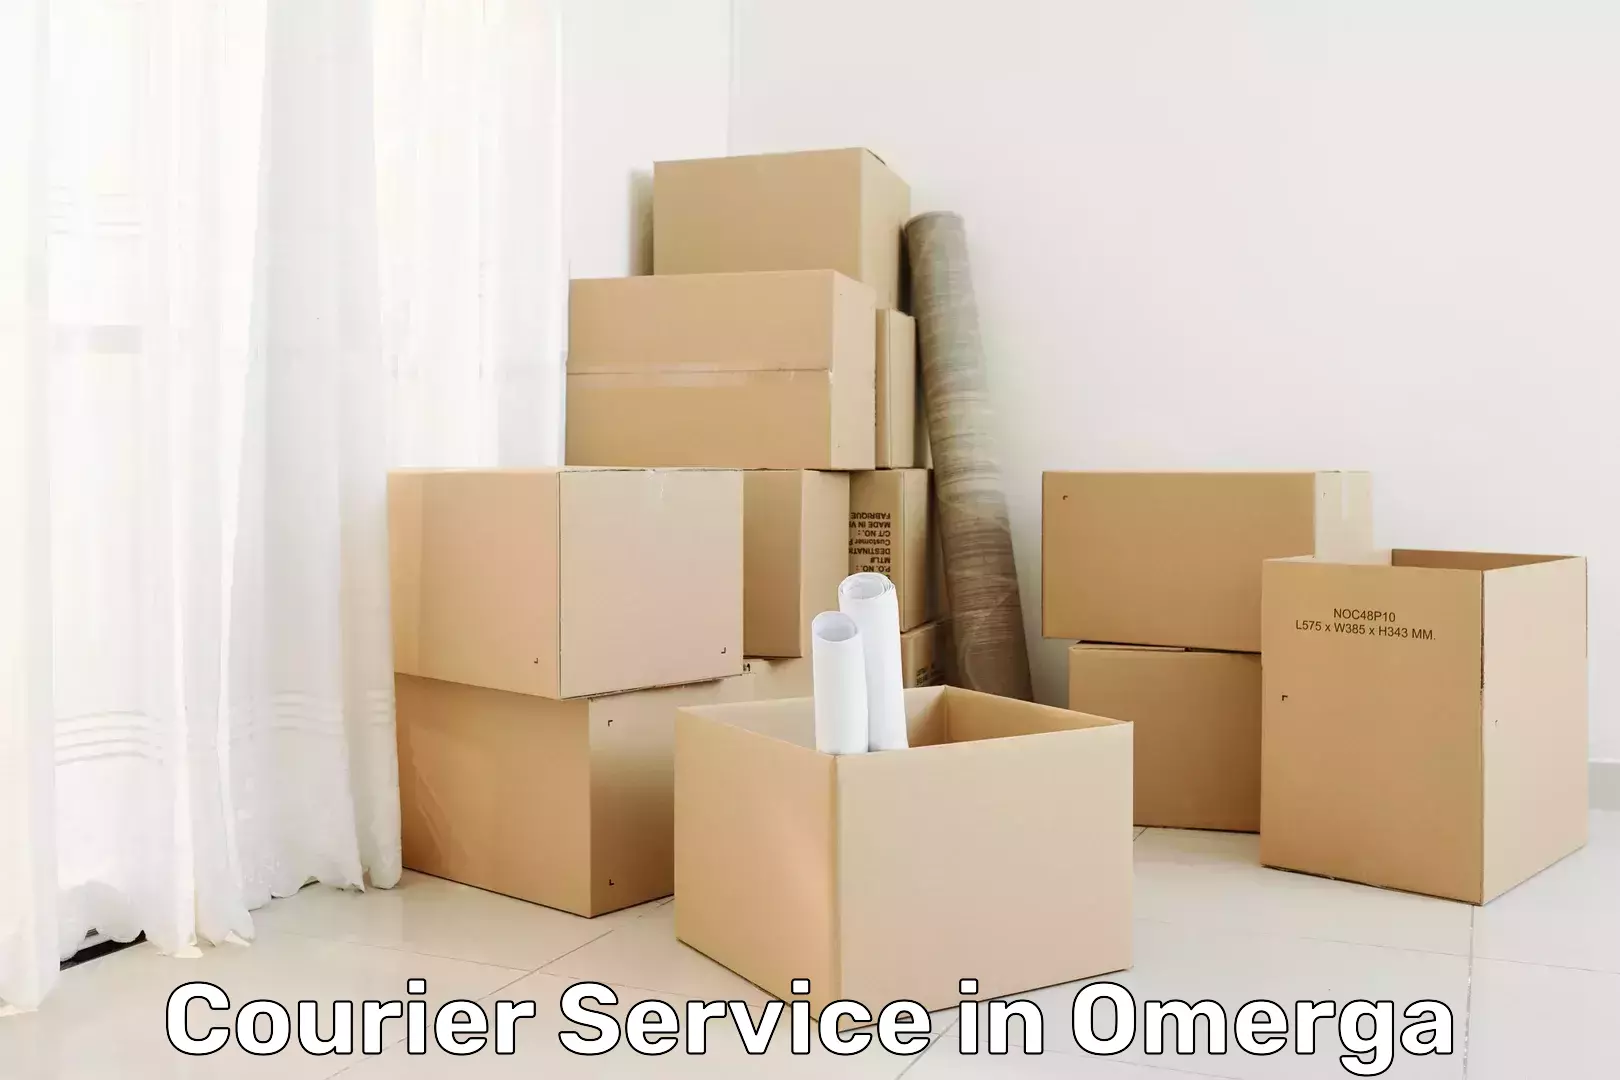 Customer-centric shipping in Omerga